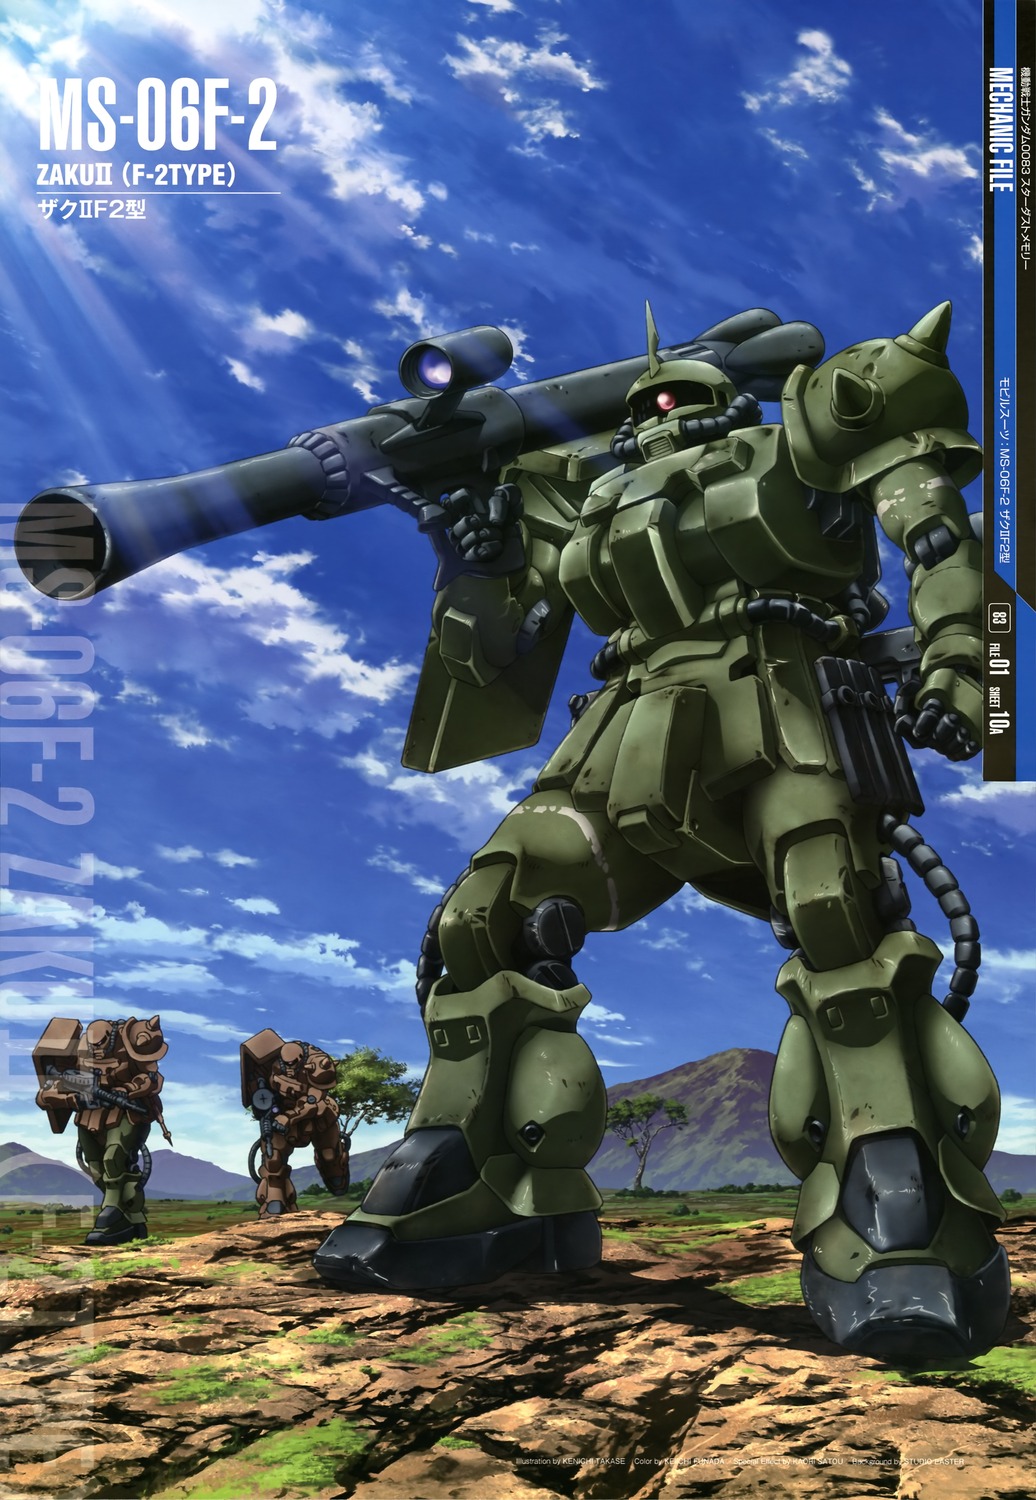 ... GUY: Mobile Suit Gundam Mechanic File - Wallpaper Size Images [Part 4